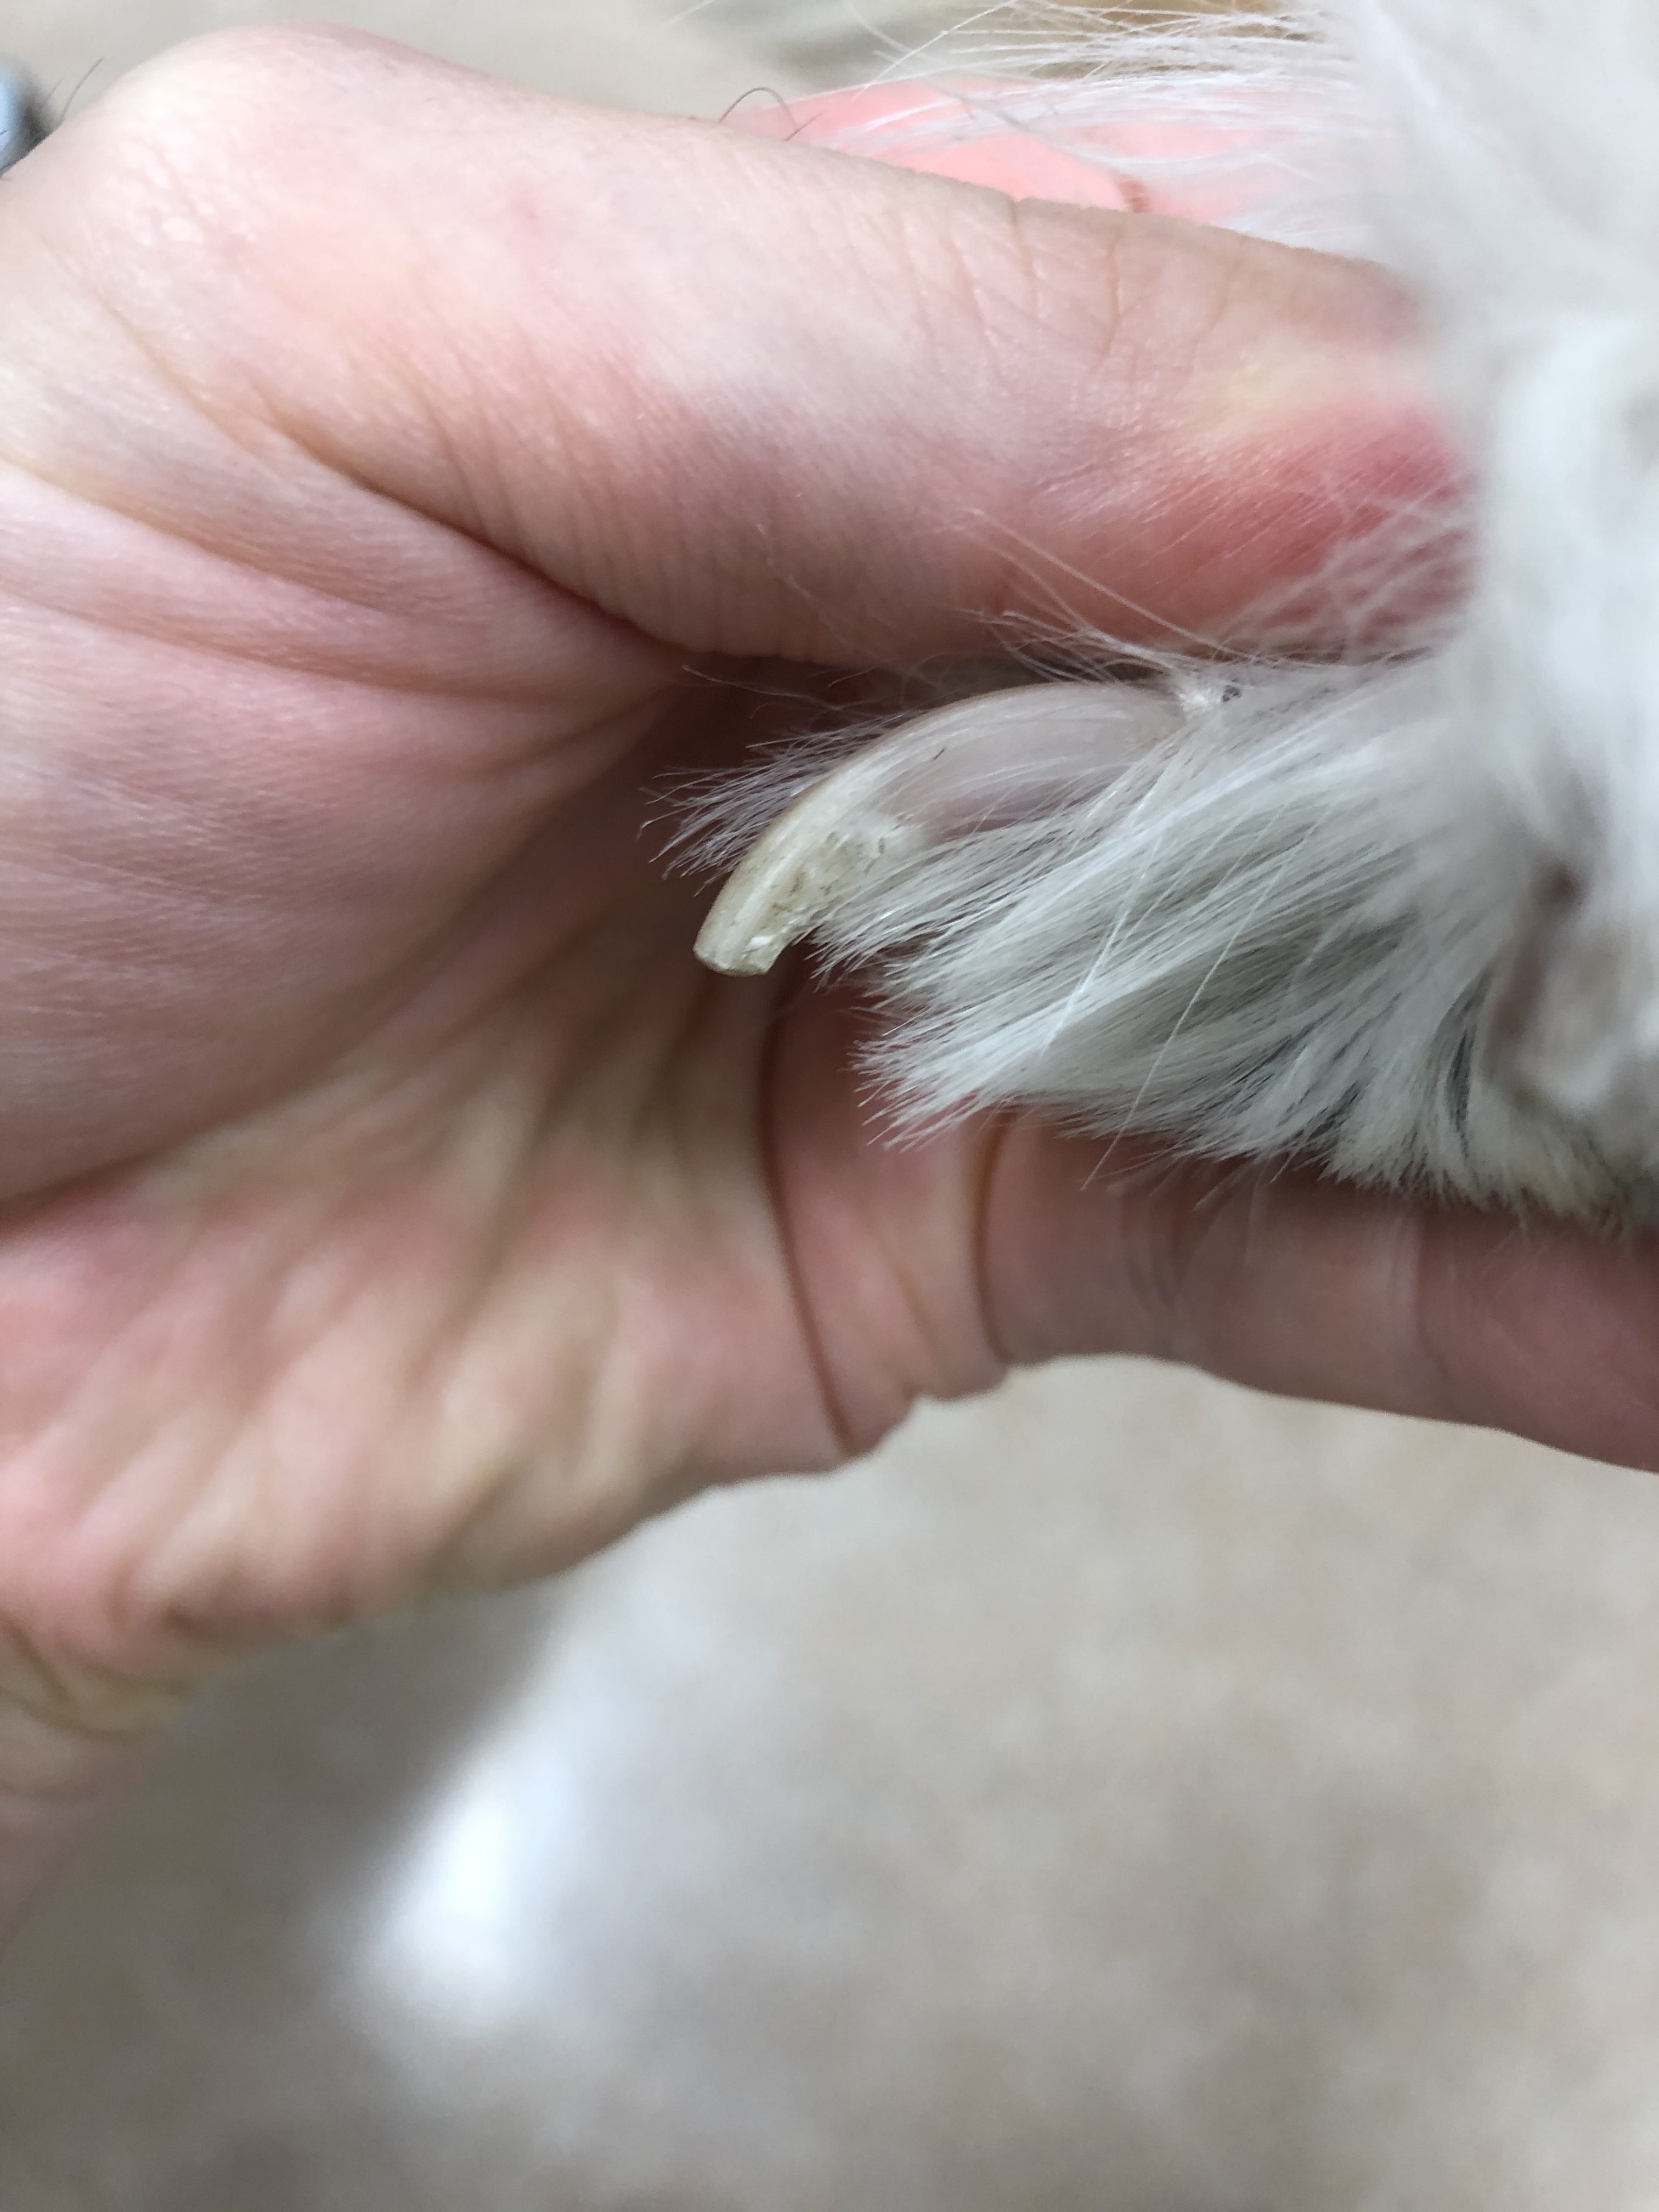 犬の爪切りのお悩み全てを獣医師が徹底解説 初心者でもできるオススメの方法も紹介 自由な獣医師ブログ